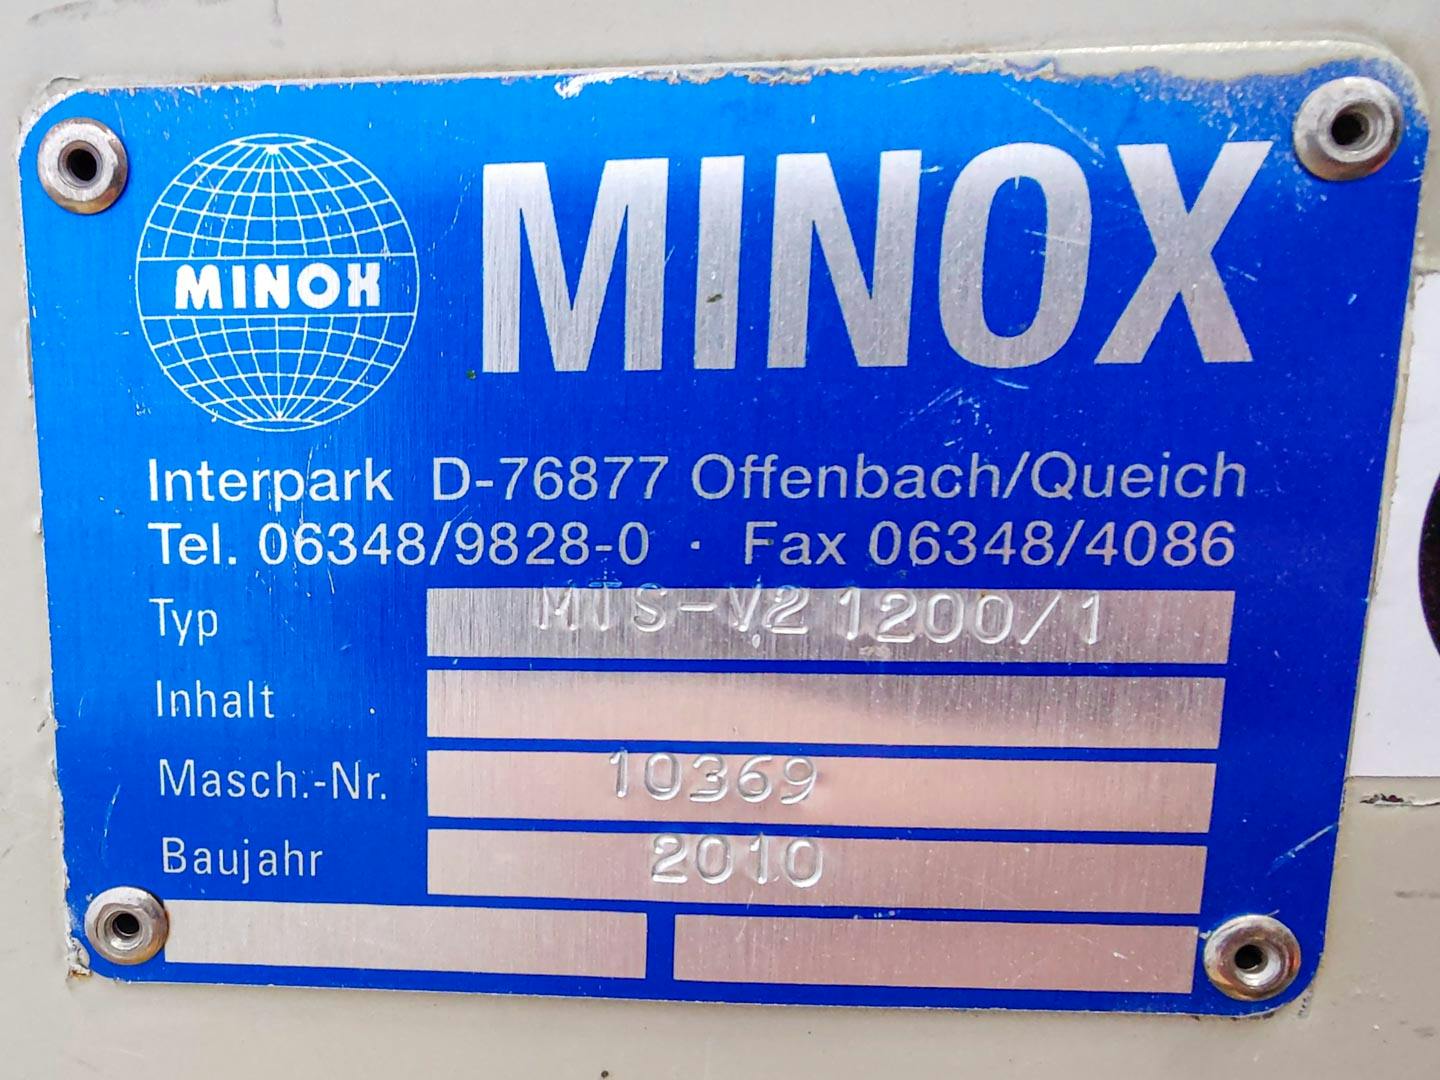 Minox MTS-V2 1200/1 - Vibracní síto - image 10